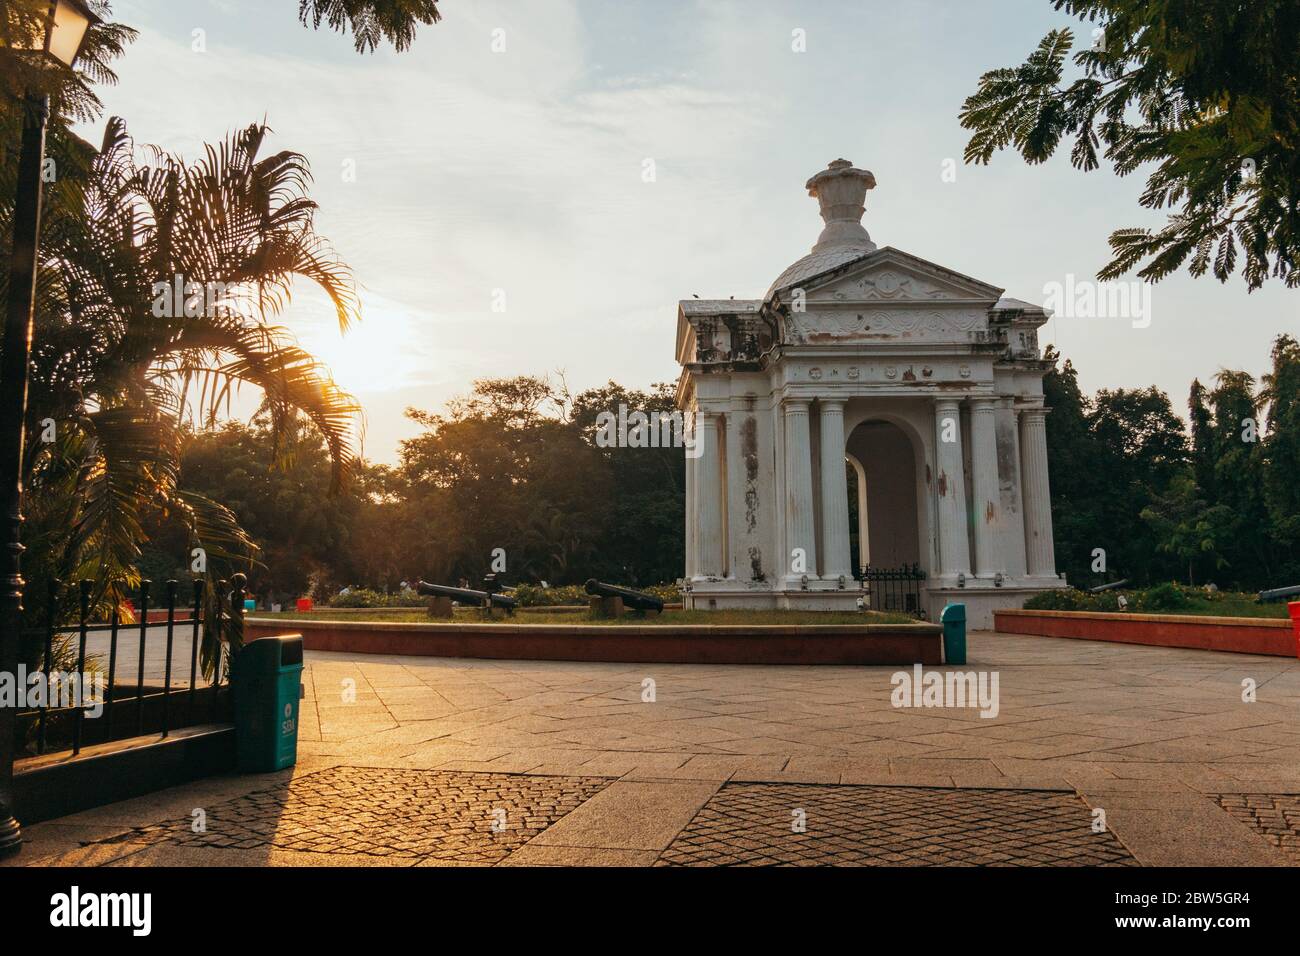 Le soleil se couche derrière une arche gréco-romaine dans le centre du parc Bharathi, Pondichéry, Inde Banque D'Images